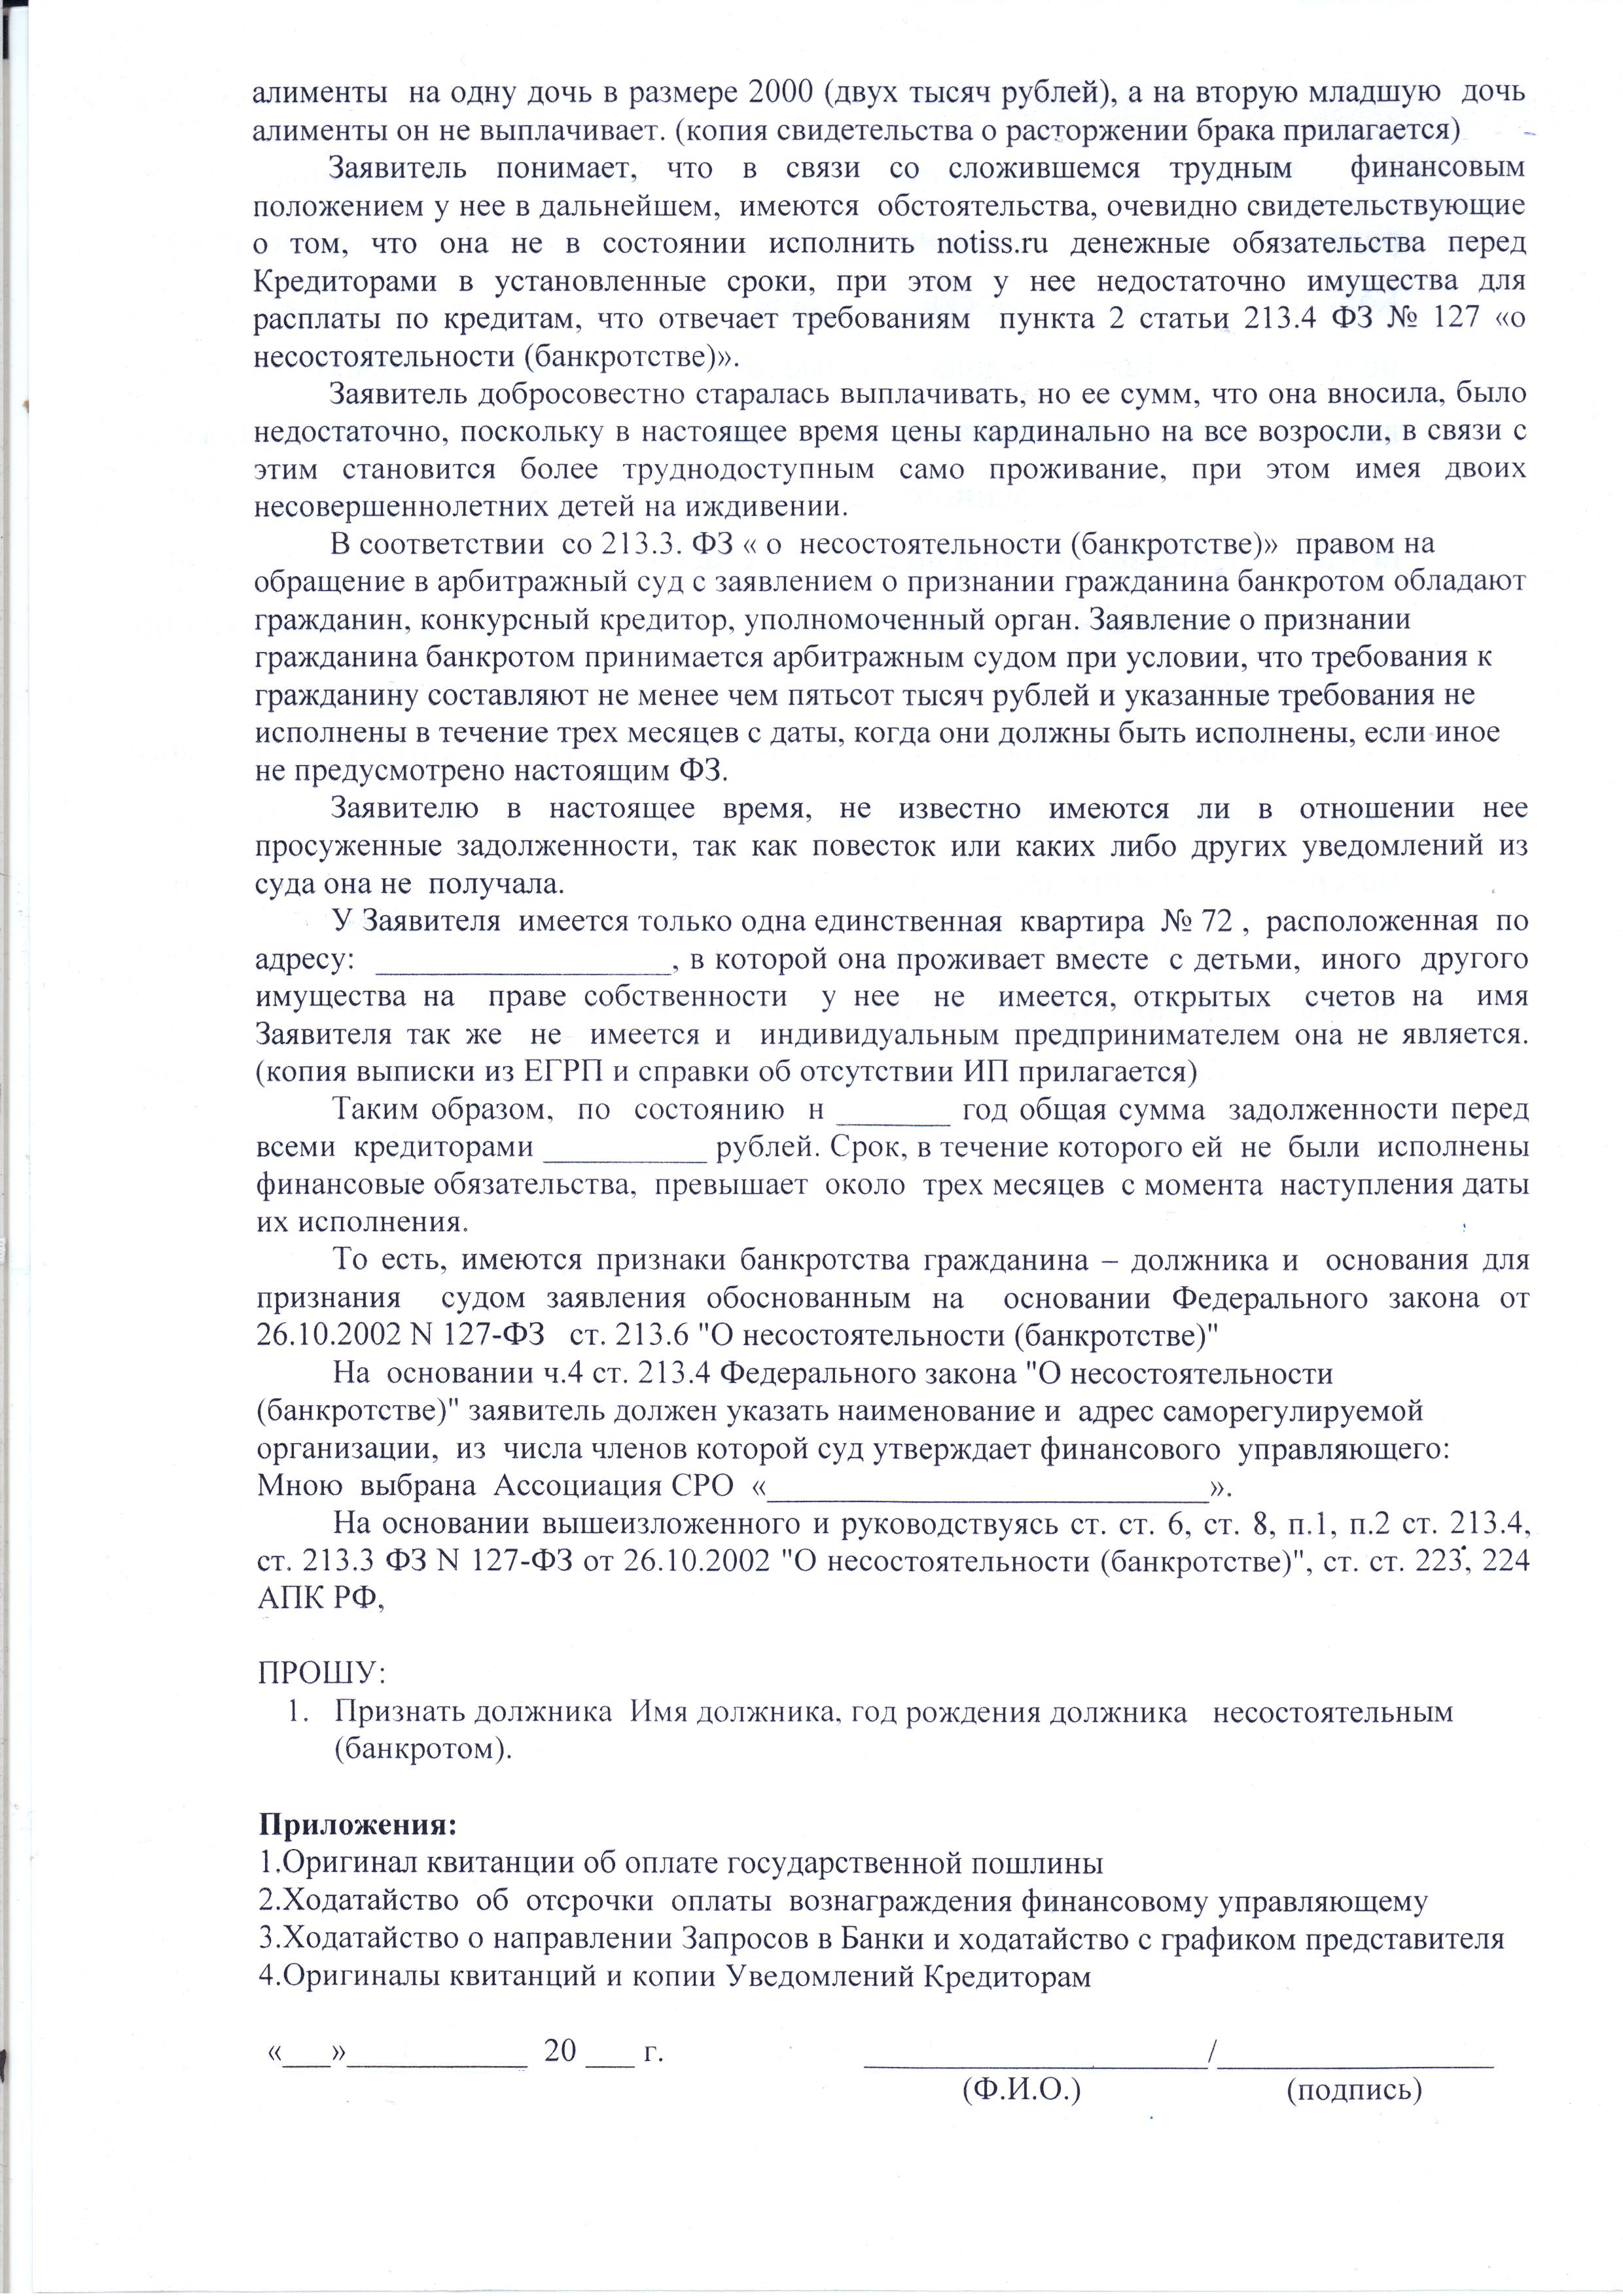 Образец Заявления в суд о признании должника банкротом стр. 2